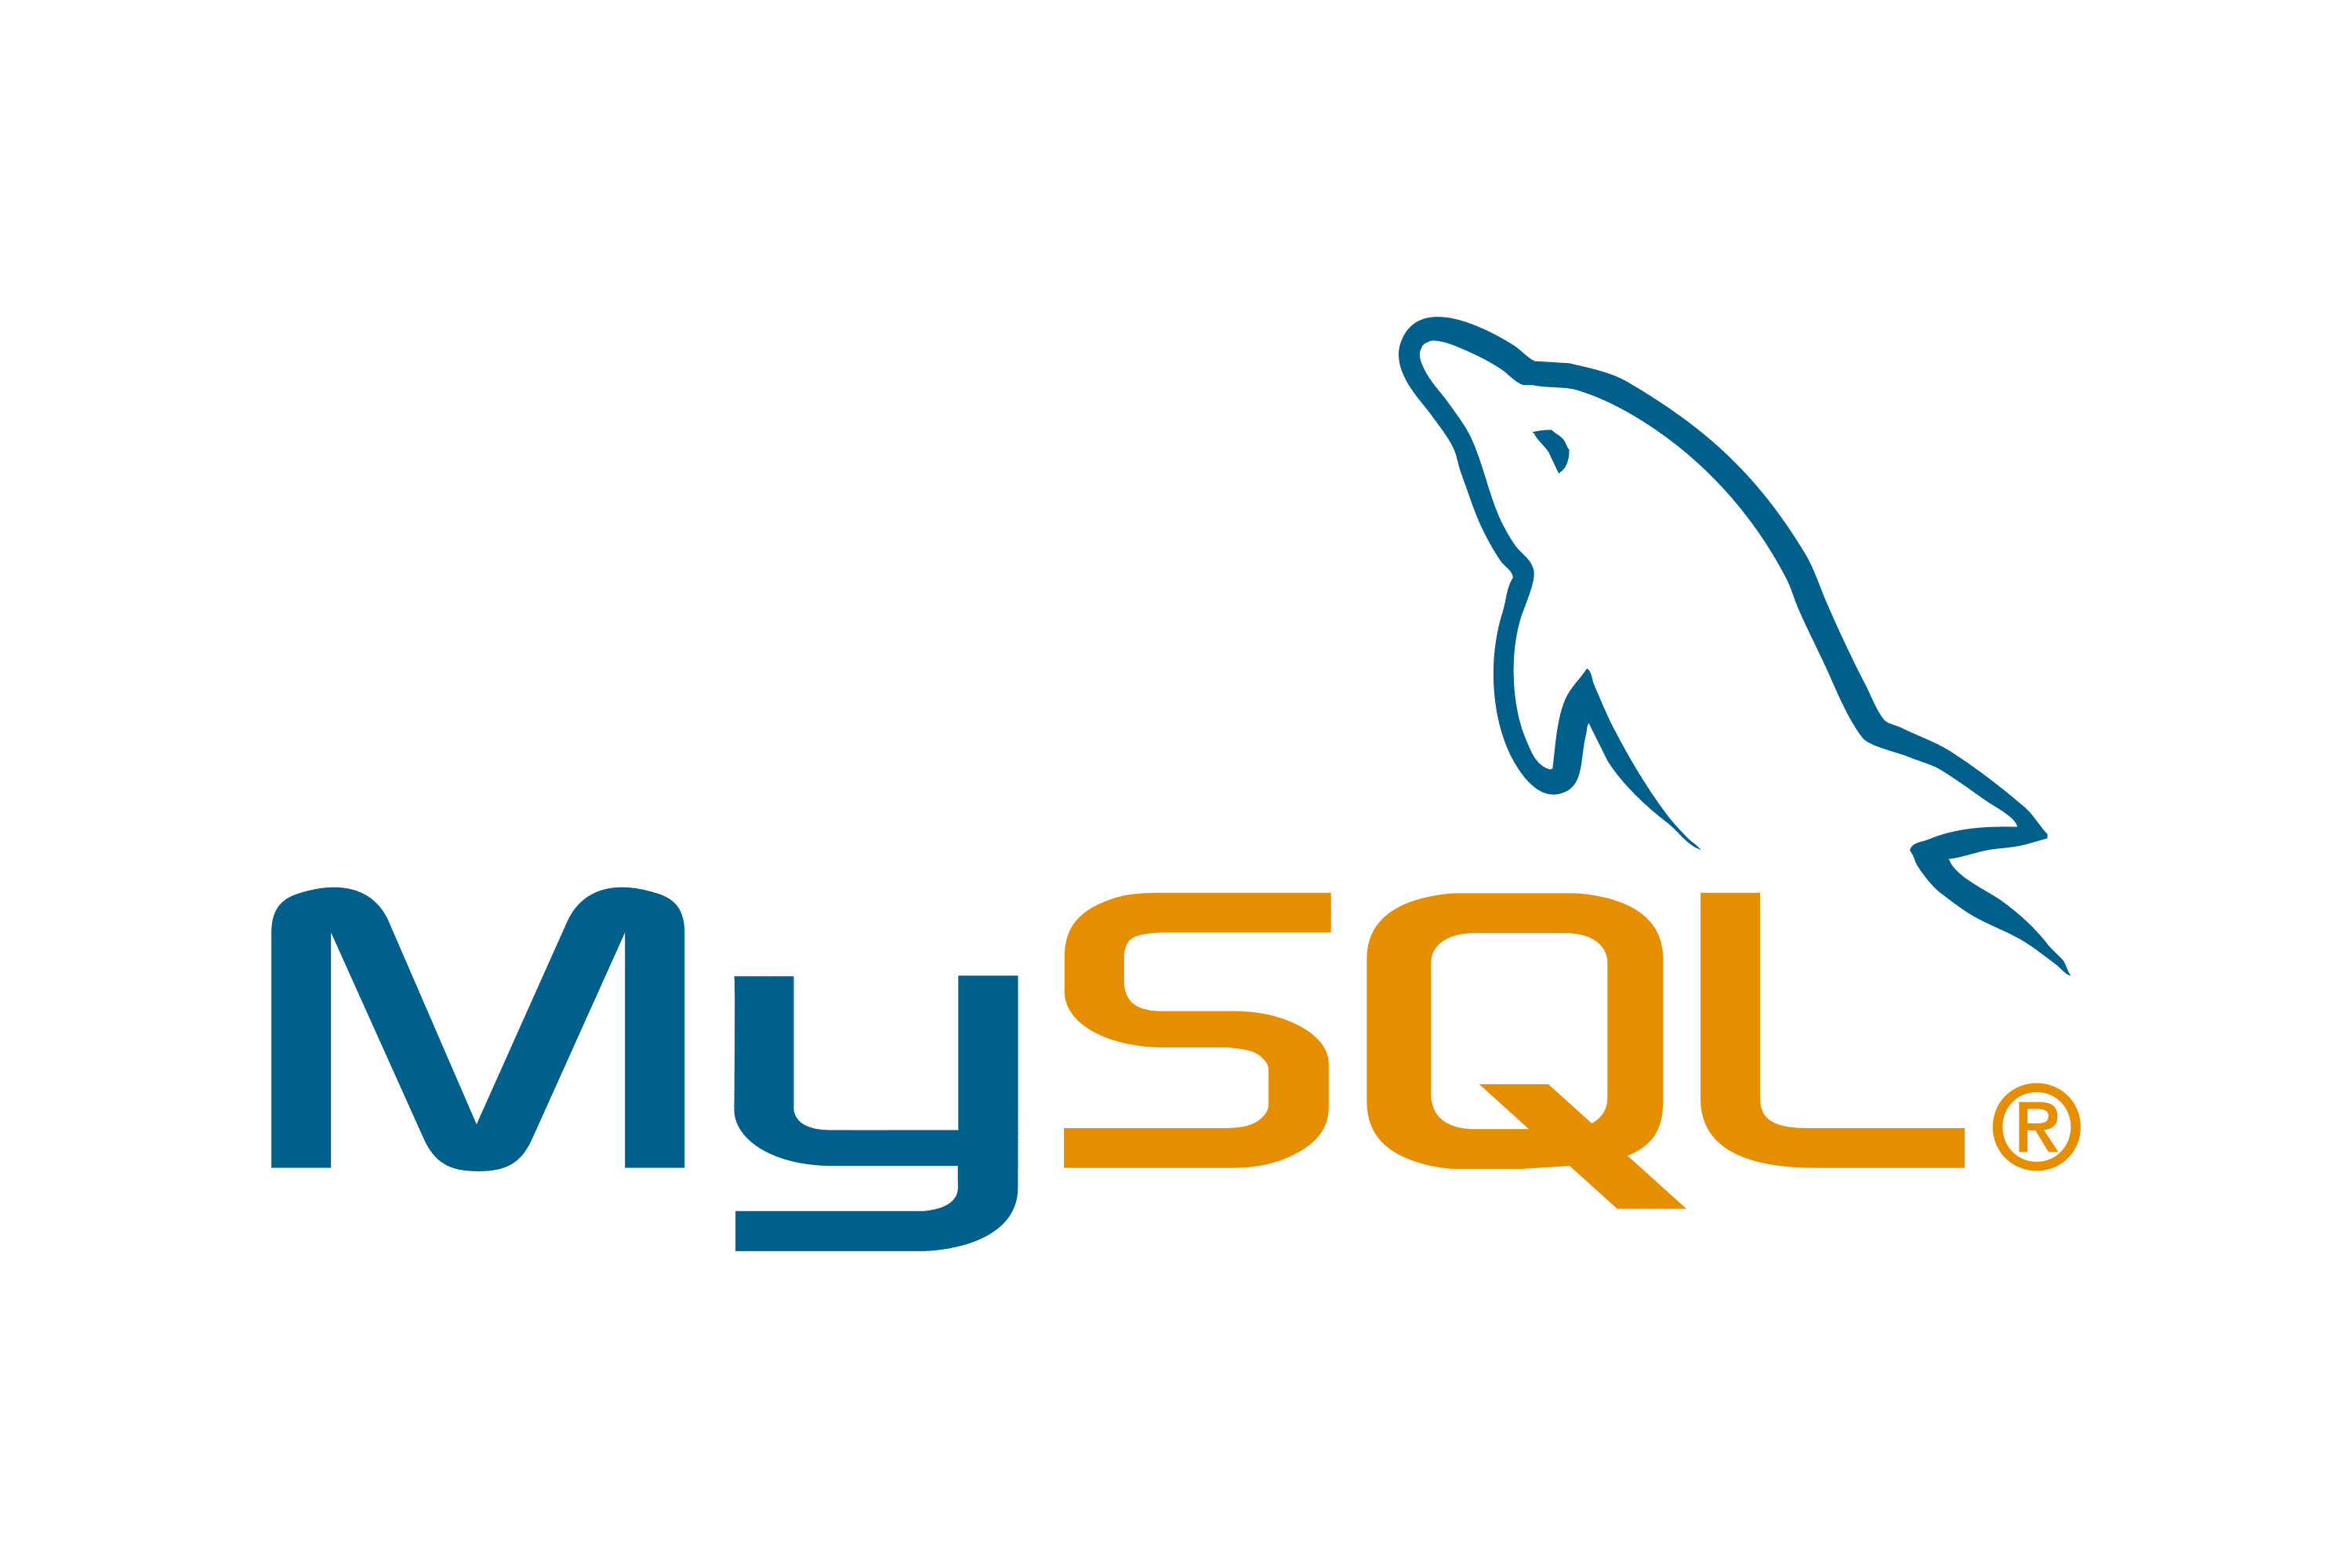 Het MySQL logo, met de tekst onder een gekanteld, gestileerd blauw dolfijnlichaam.